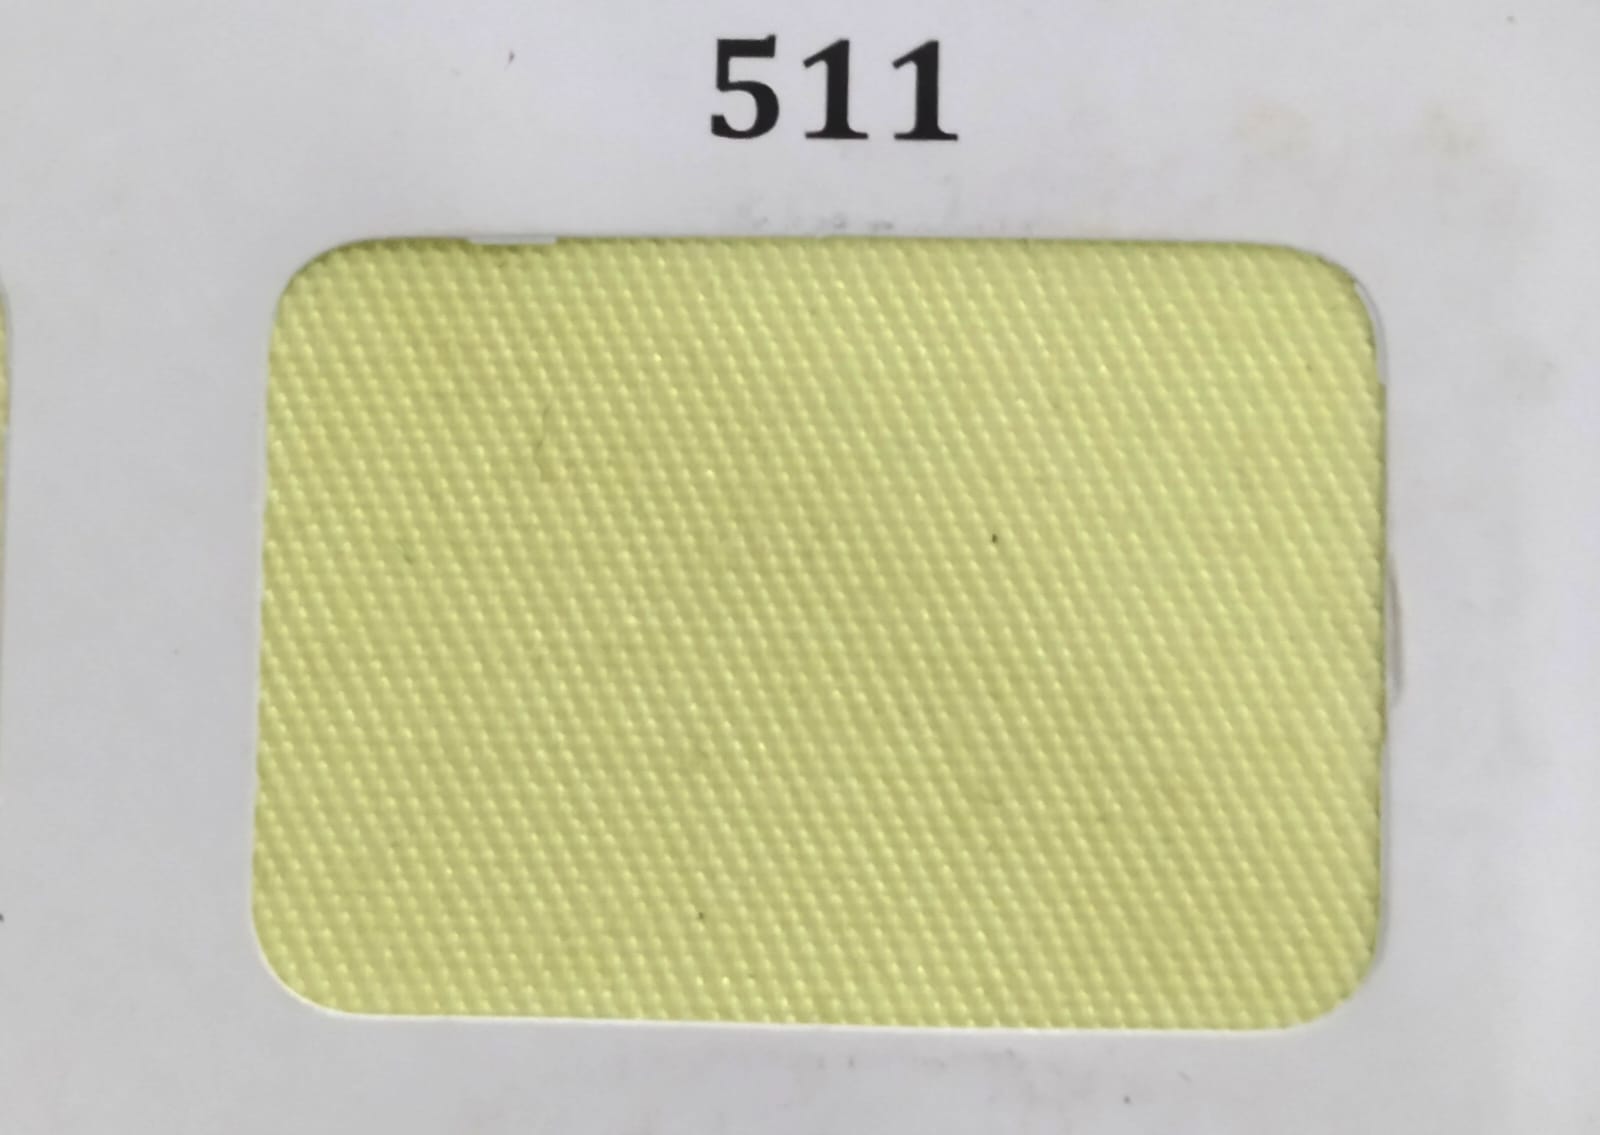 Gambar 1. Unione Kode 511 Warna Kuning Part 1